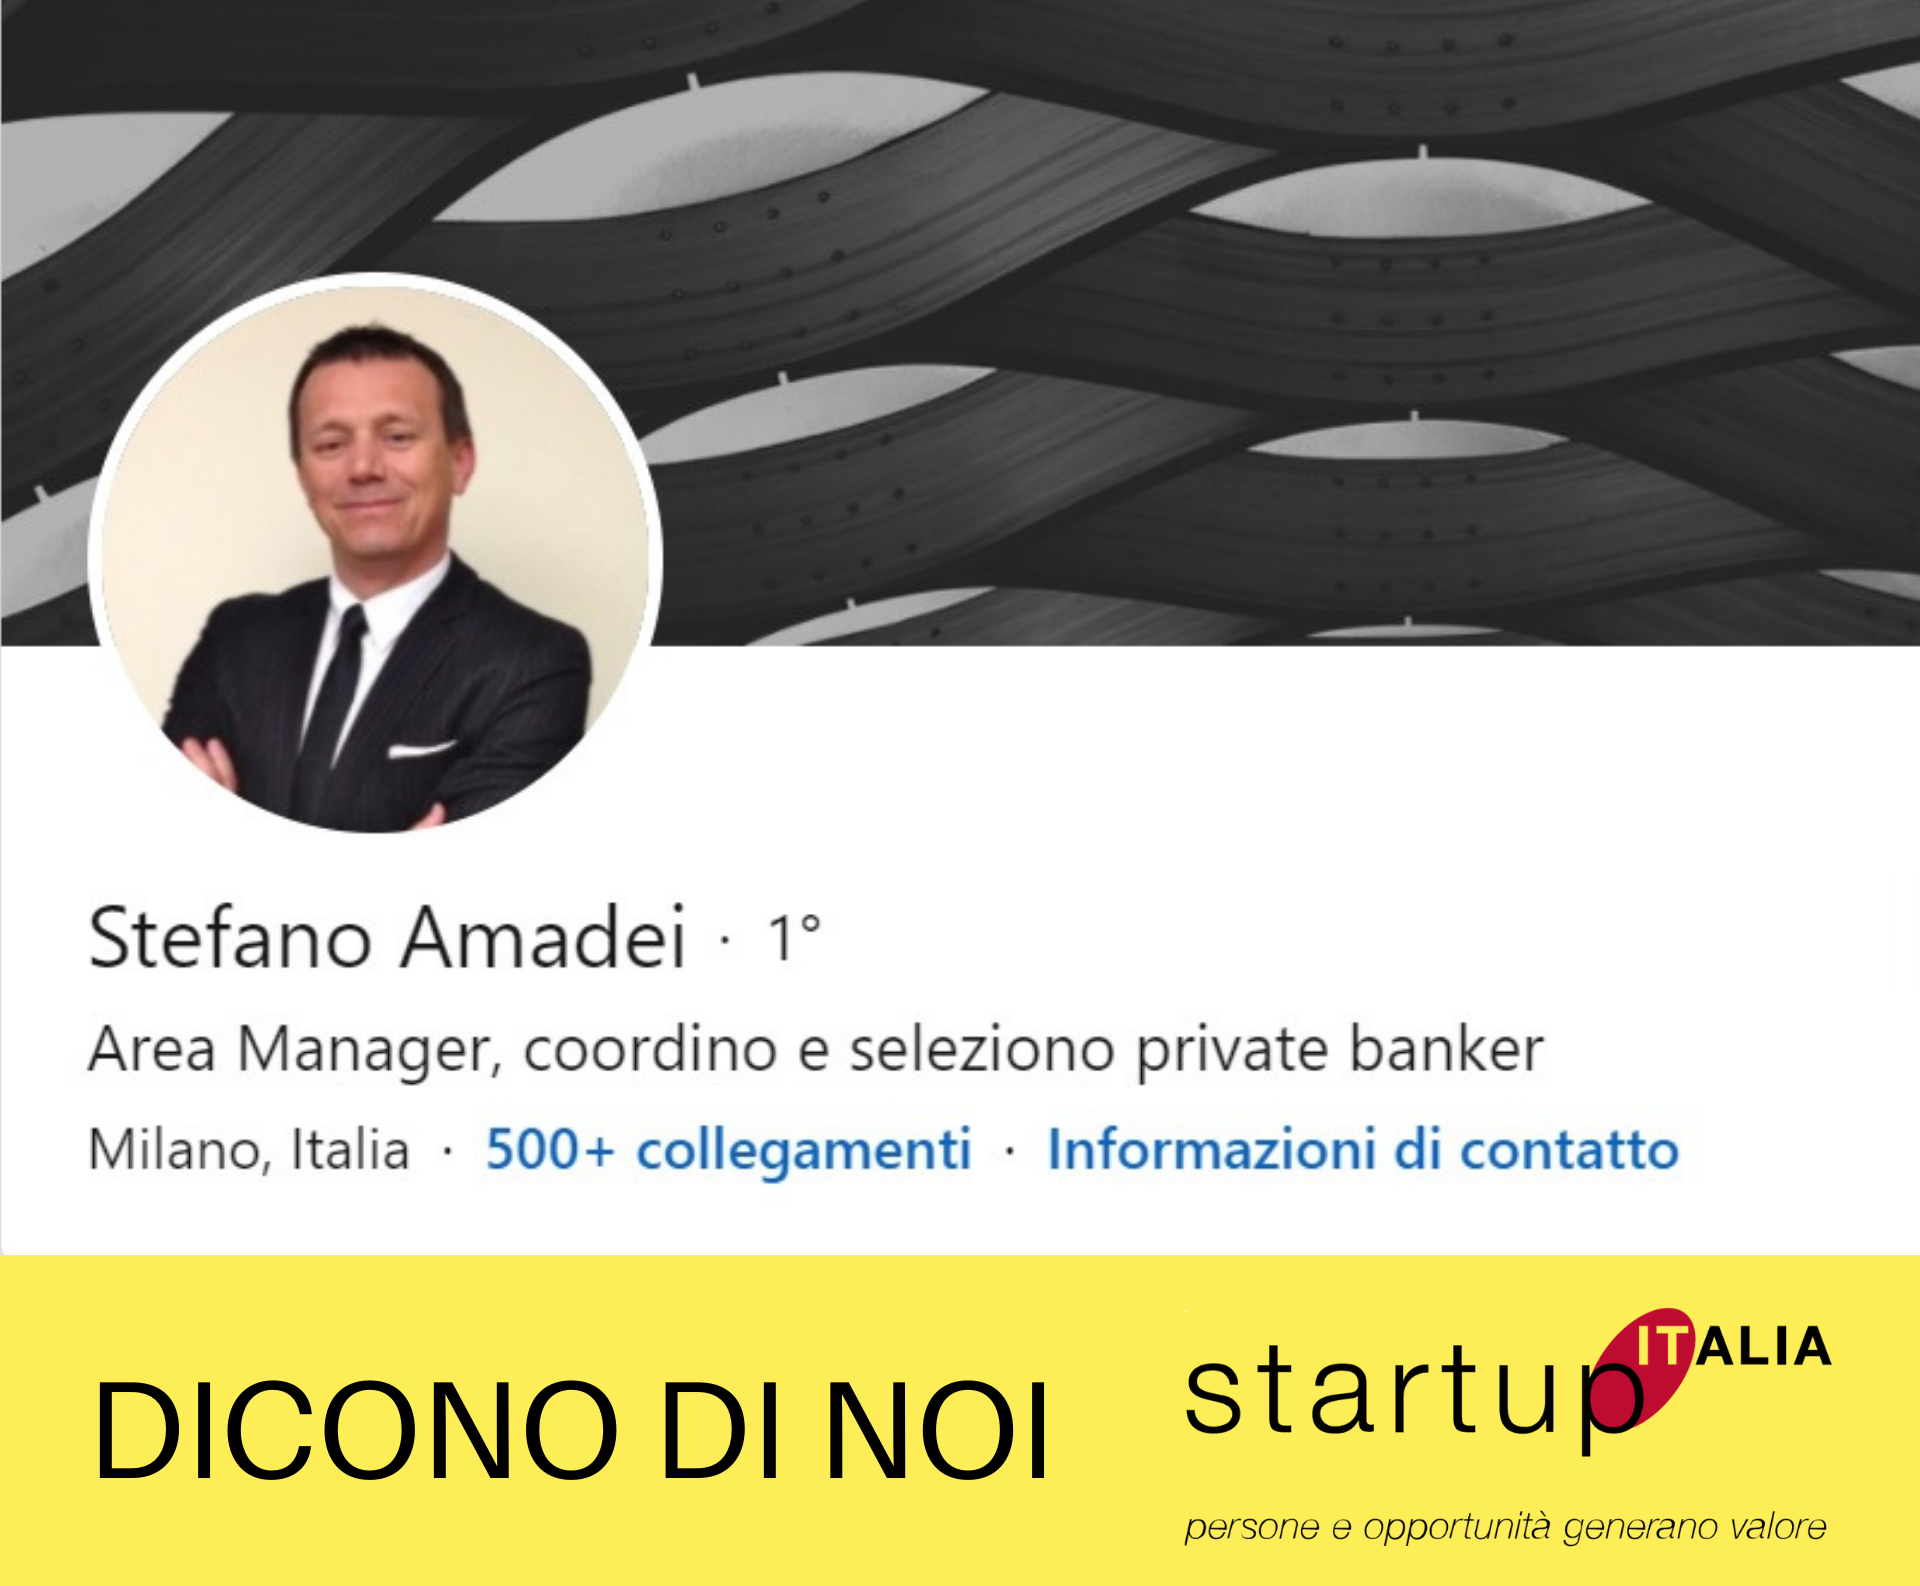 referenze Startup Italia - Stefano Amedei